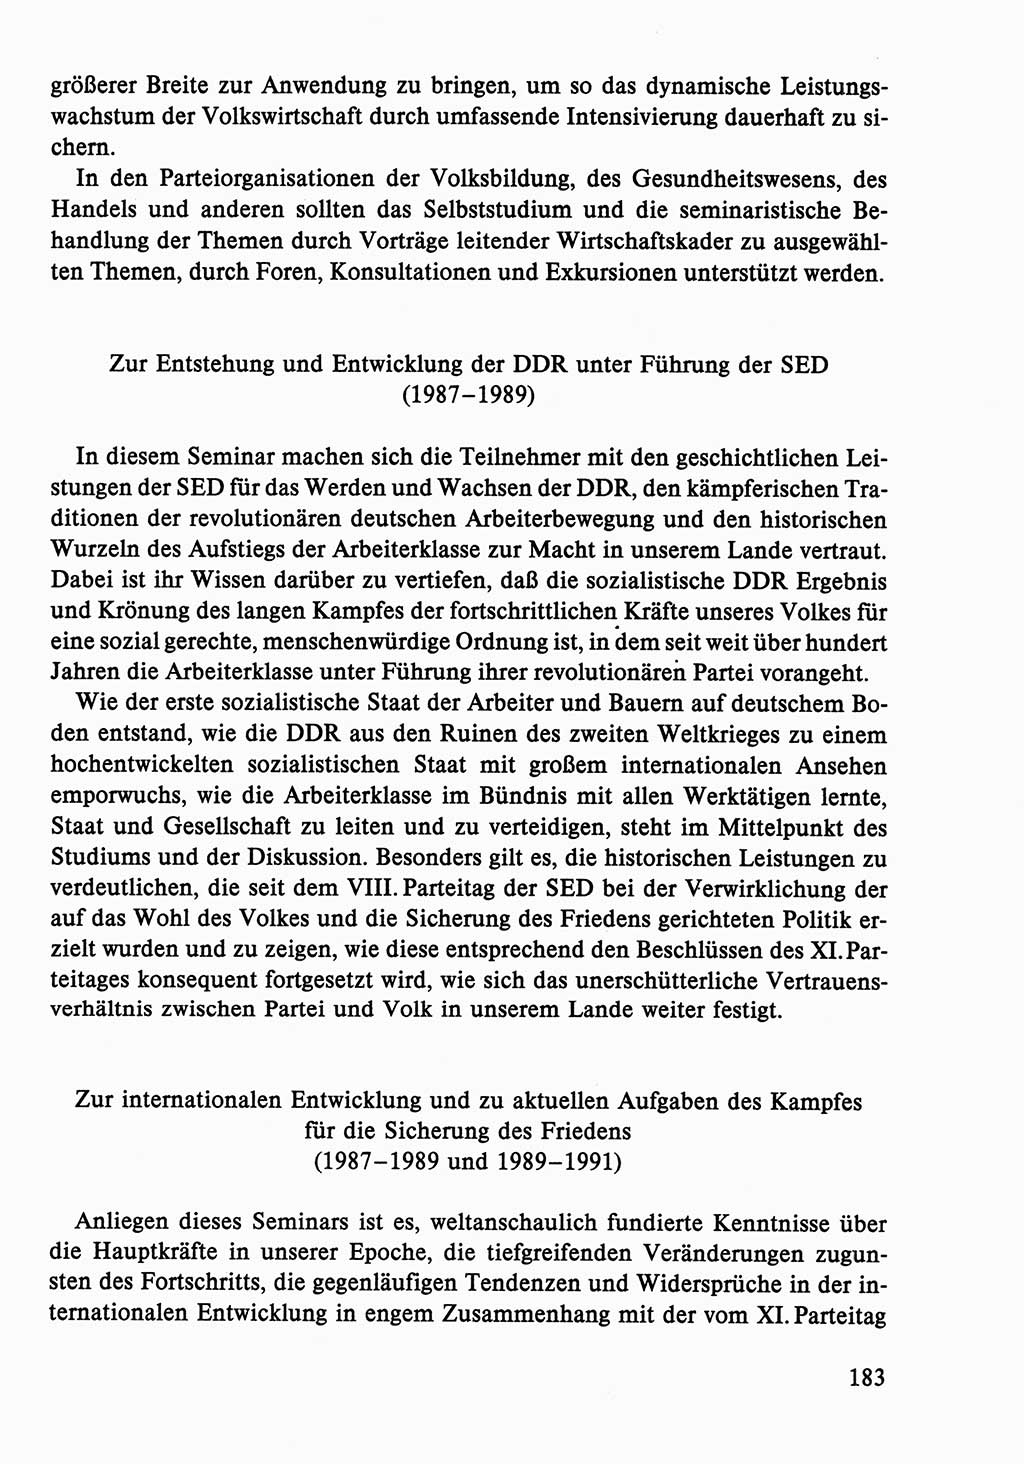 Dokumente der Sozialistischen Einheitspartei Deutschlands (SED) [Deutsche Demokratische Republik (DDR)] 1986-1987, Seite 183 (Dok. SED DDR 1986-1987, S. 183)